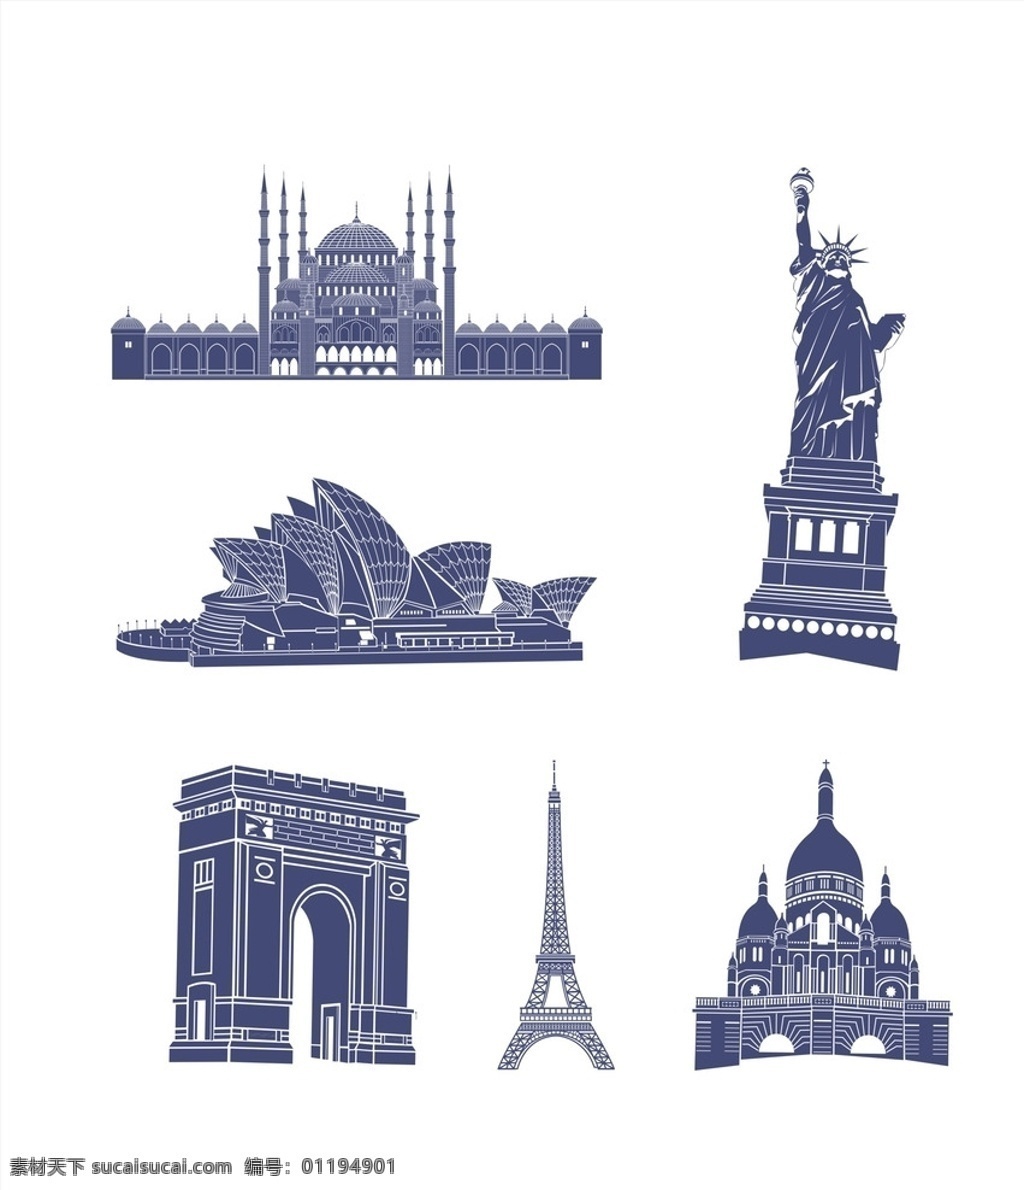 世界 建筑 矢量图 自由女神 世界建筑 巴黎铁塔 凯旋门 悉尼歌剧院 蓝调 建筑矢量素材